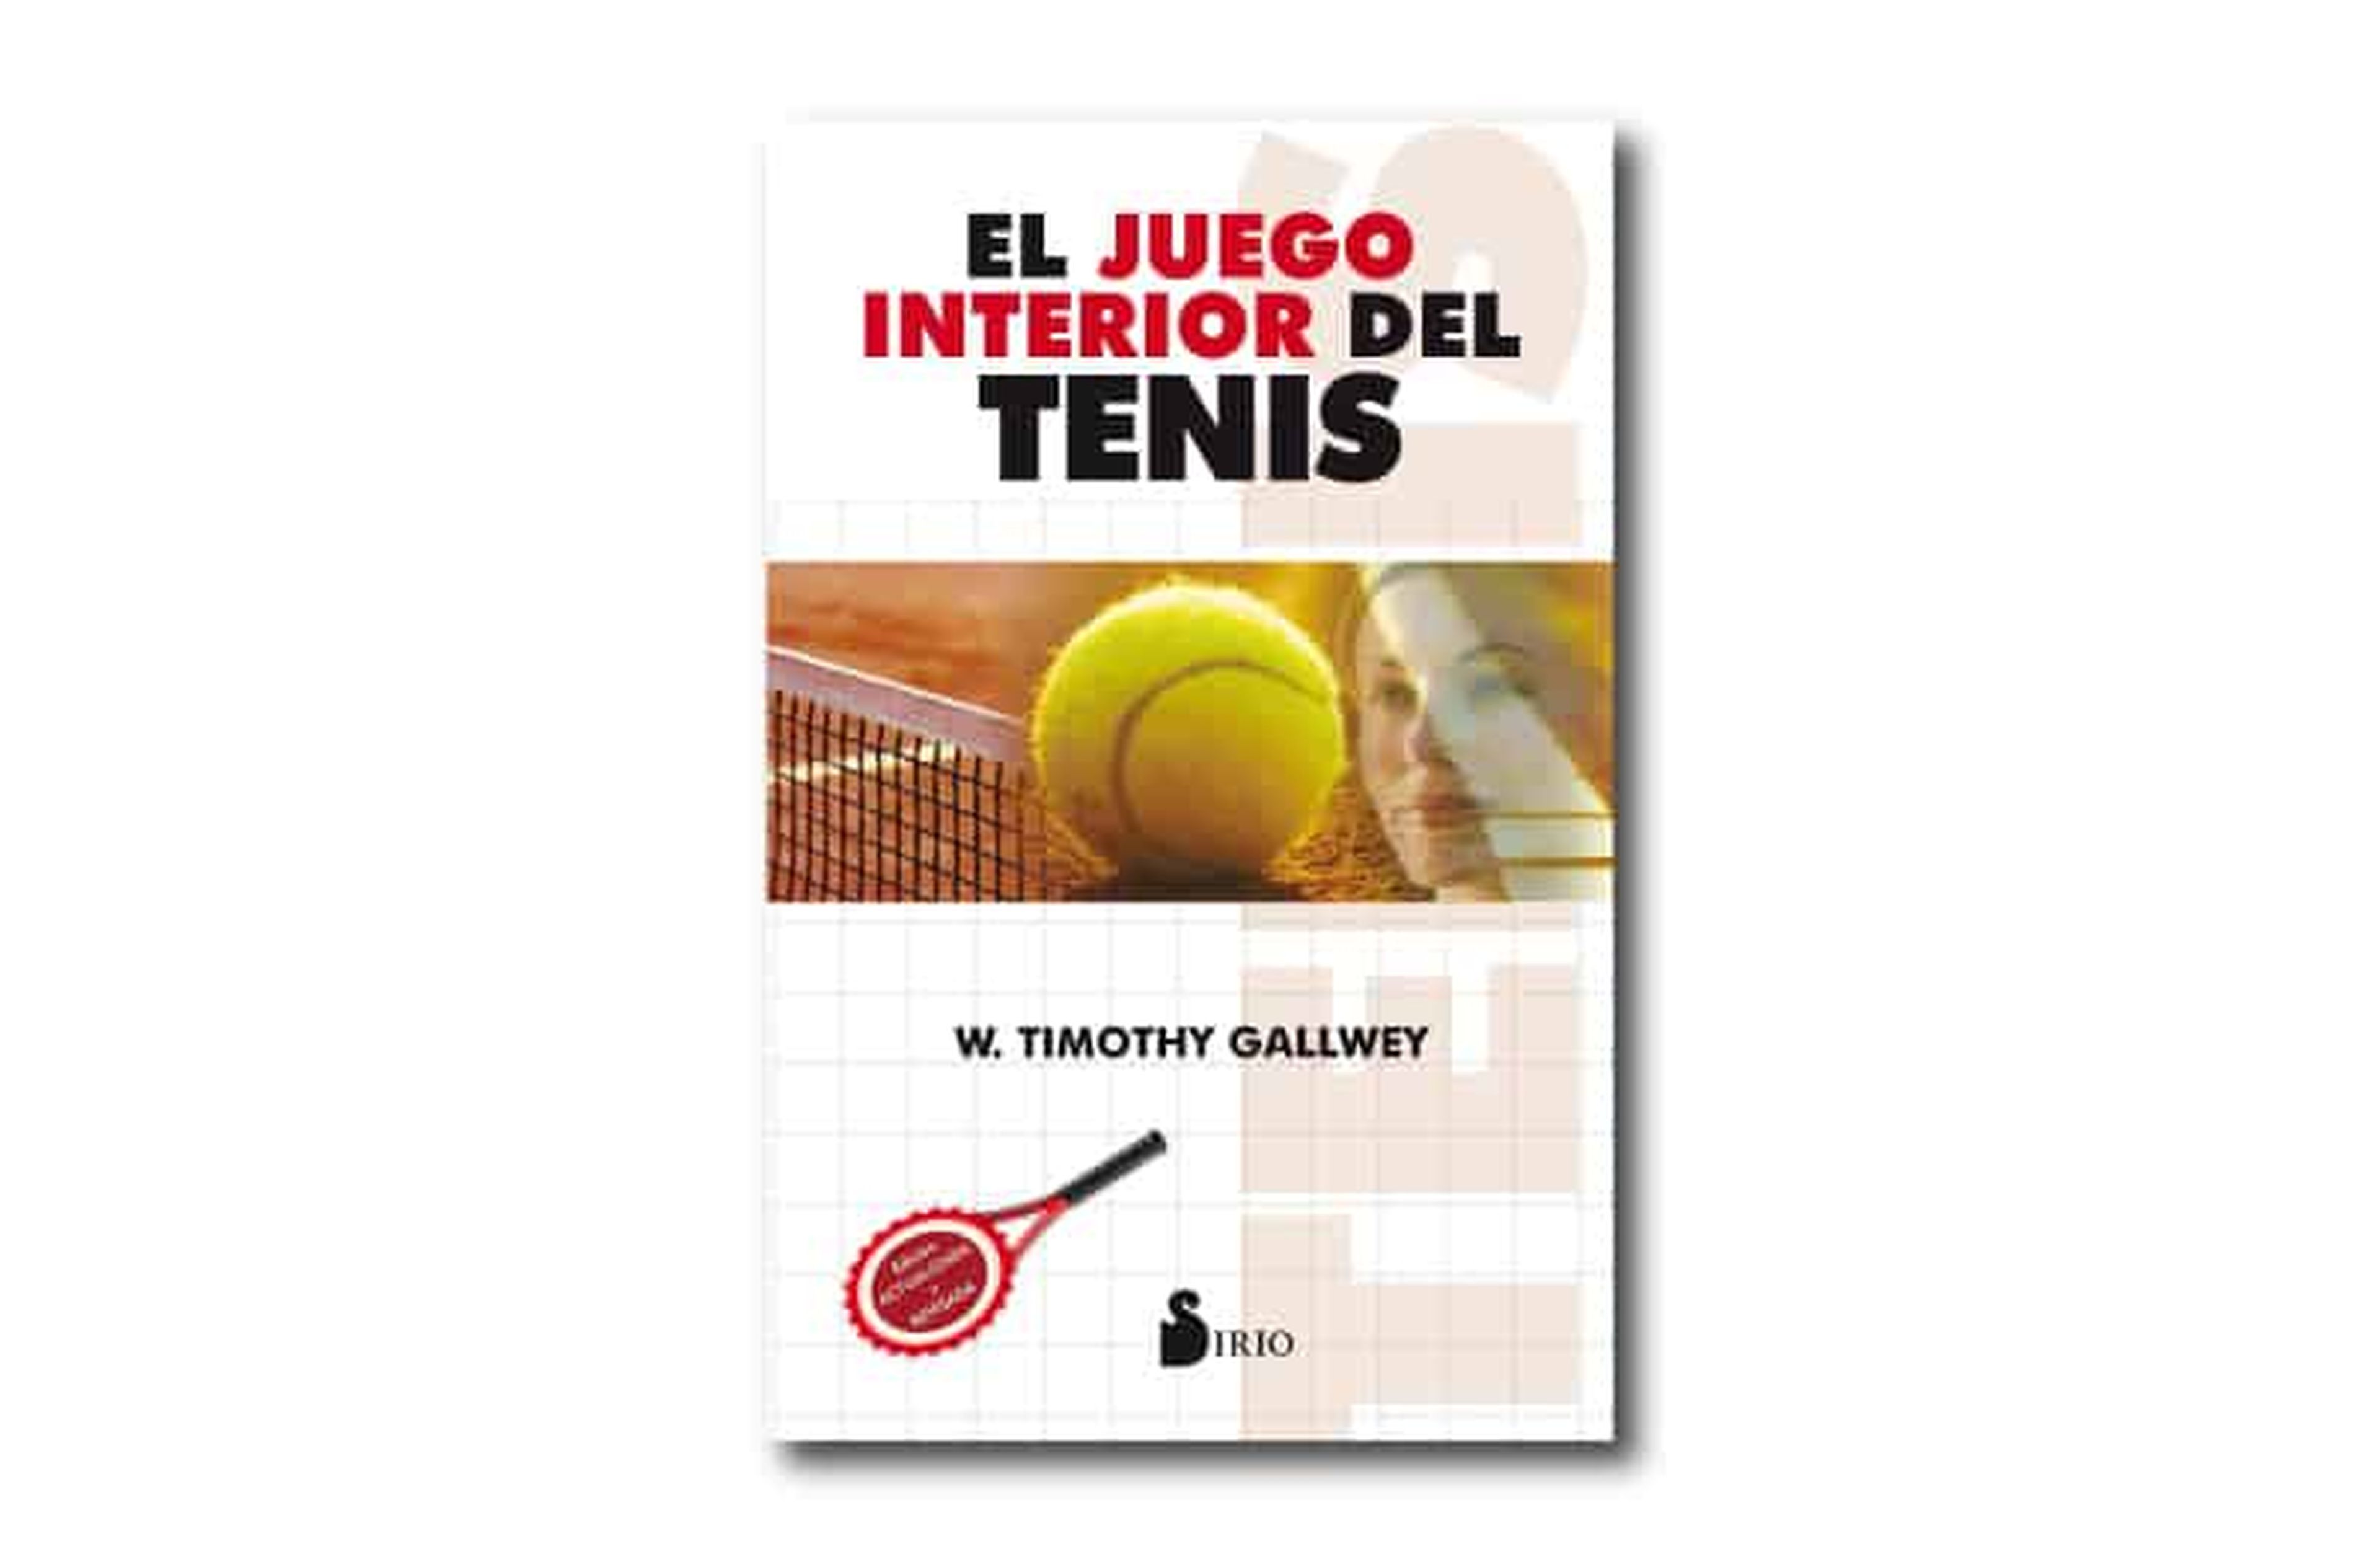 El juego interior del tenis, de Robert Gallwey